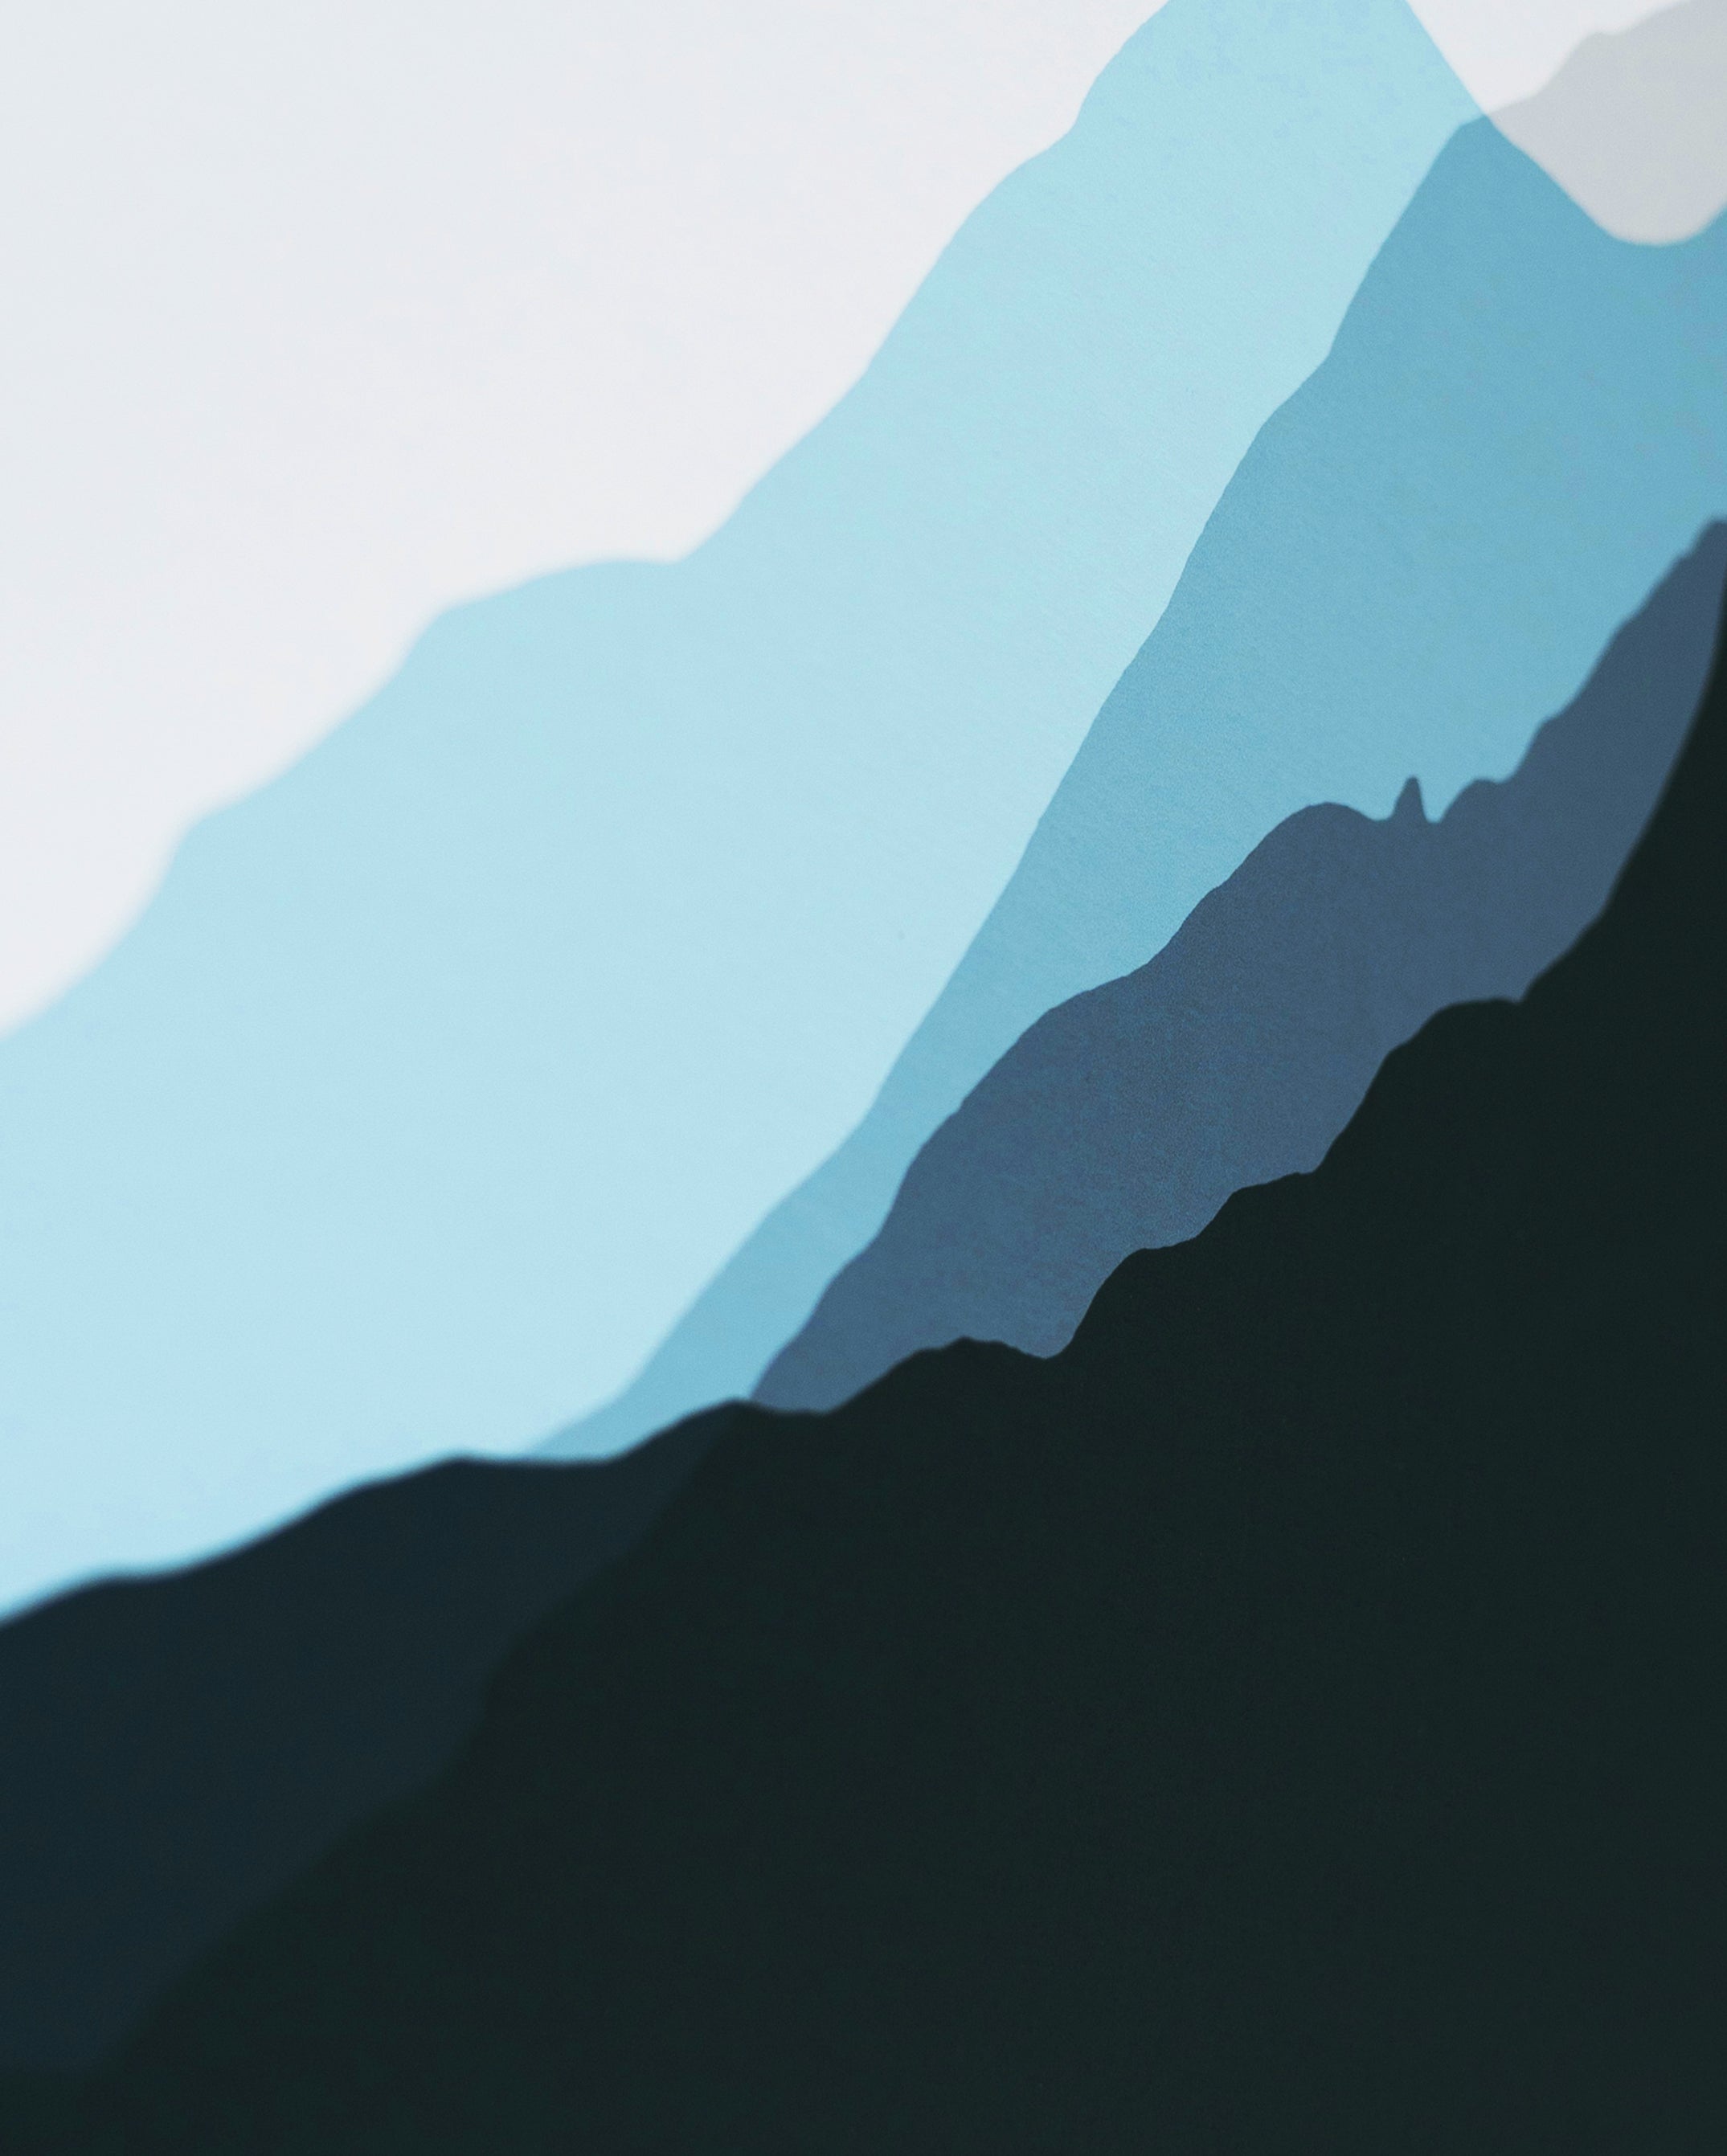 The Three Peaks – Ben Nevis